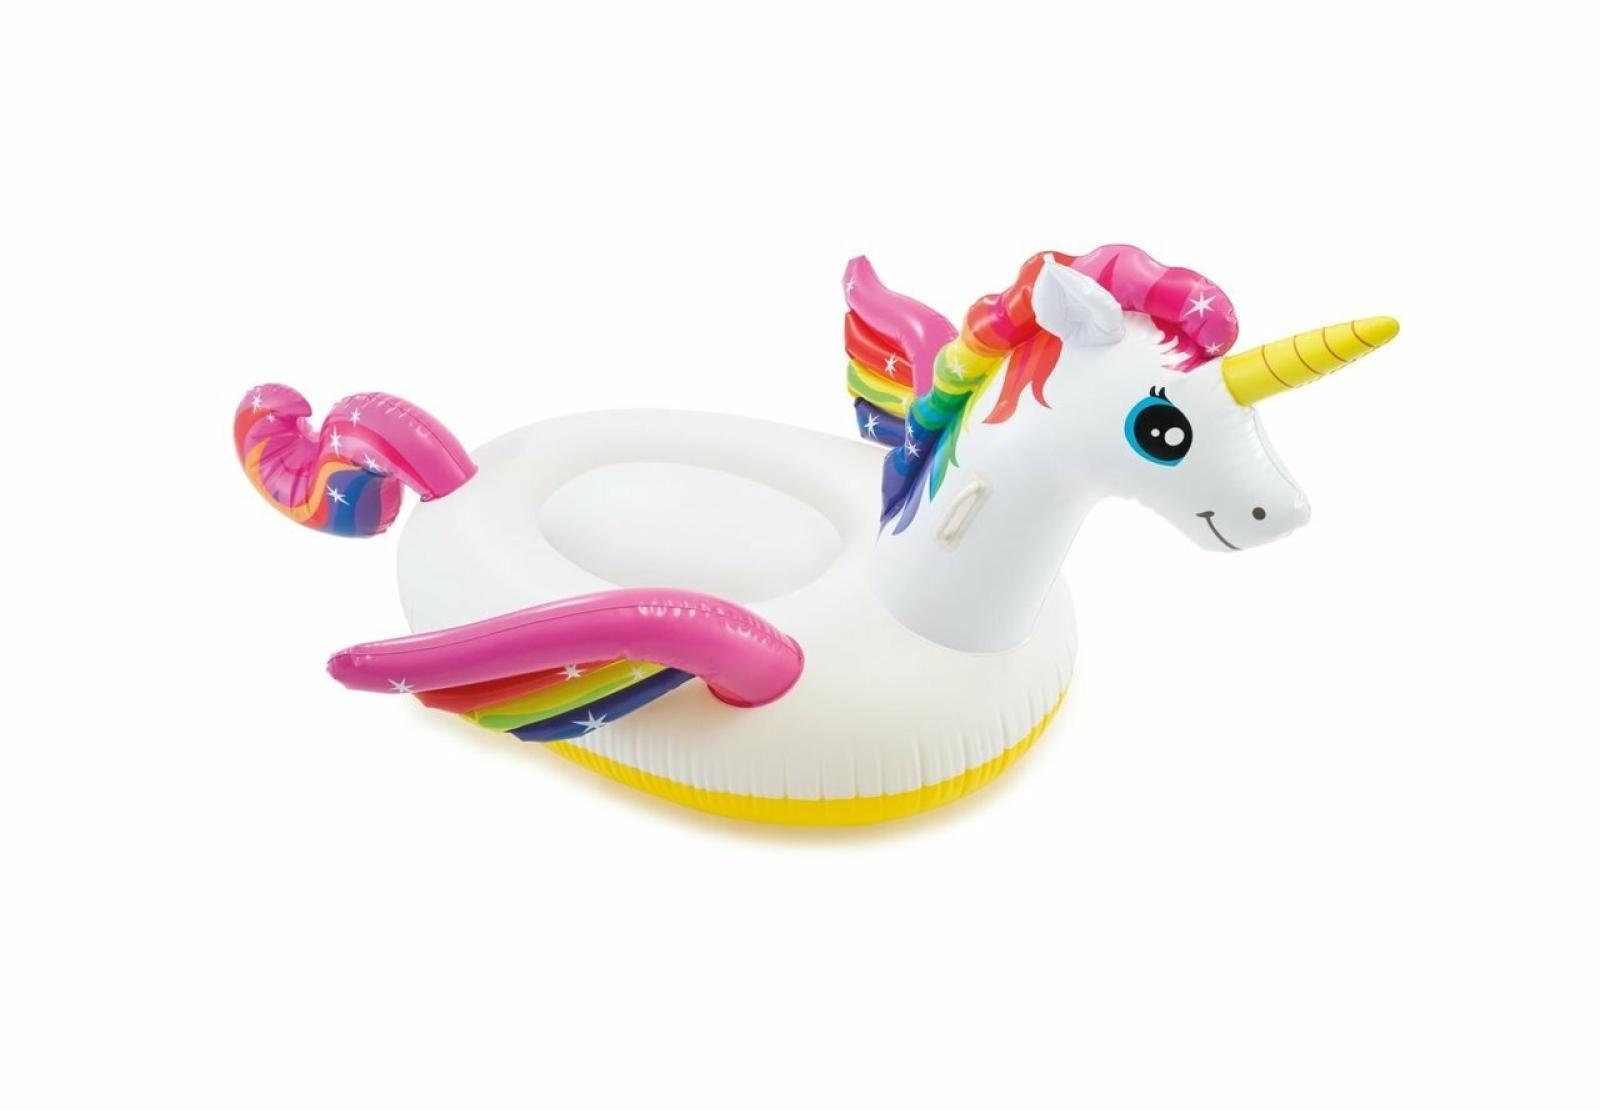 Intex Unicorn Ride-On Inflatable Pool Float